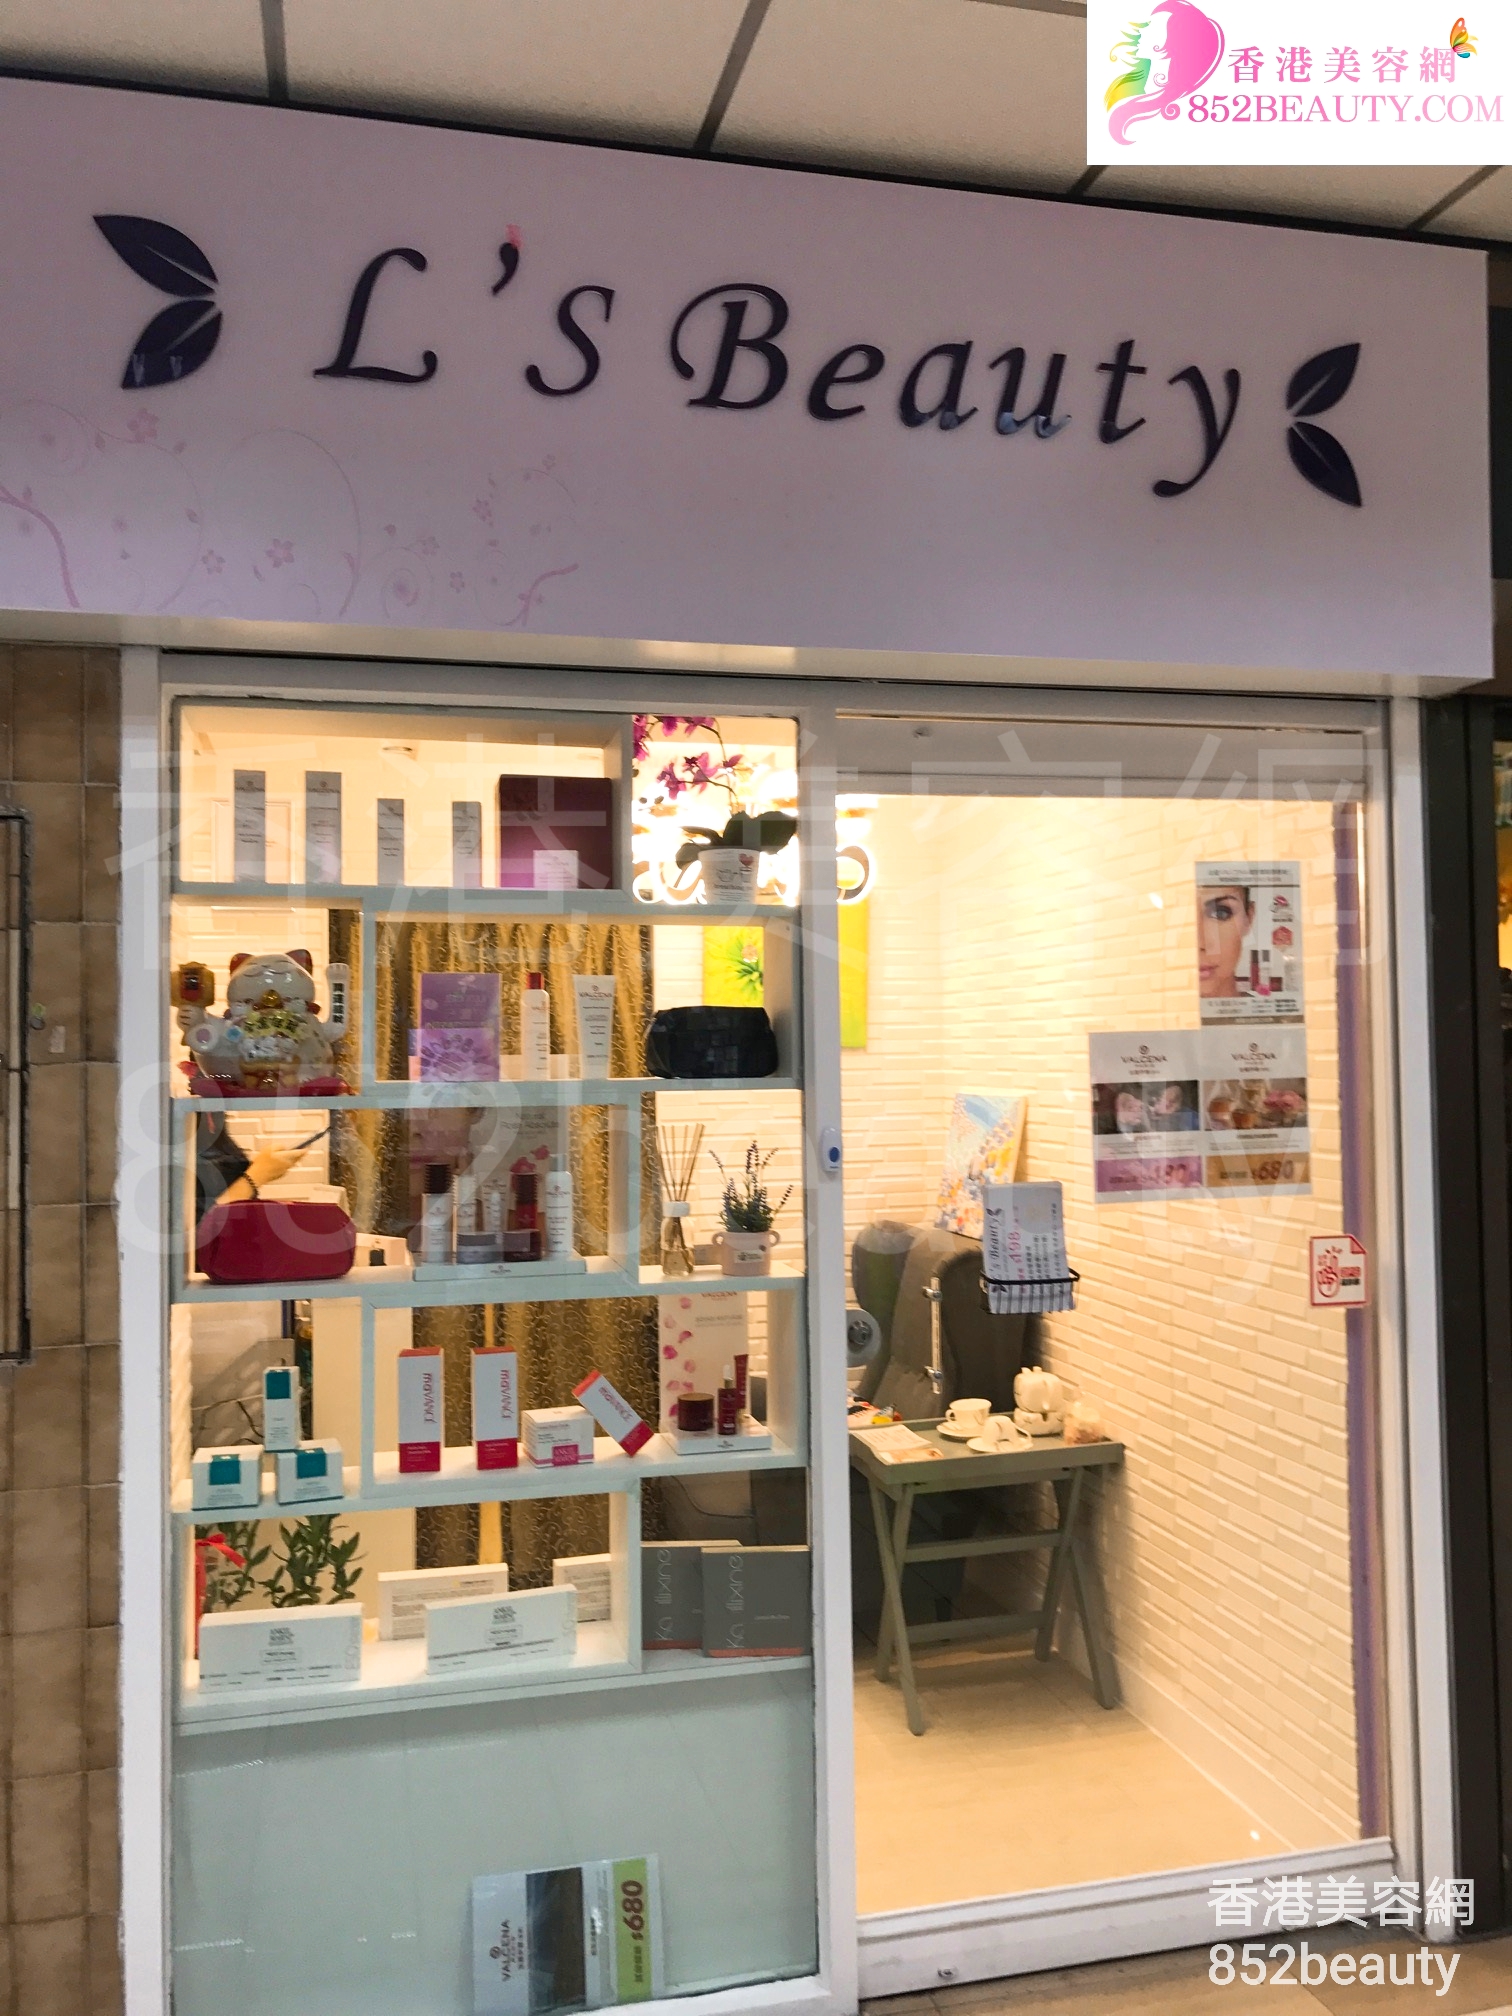 香港美容網 Hong Kong Beauty Salon 美容院 / 美容師: L's Beauty